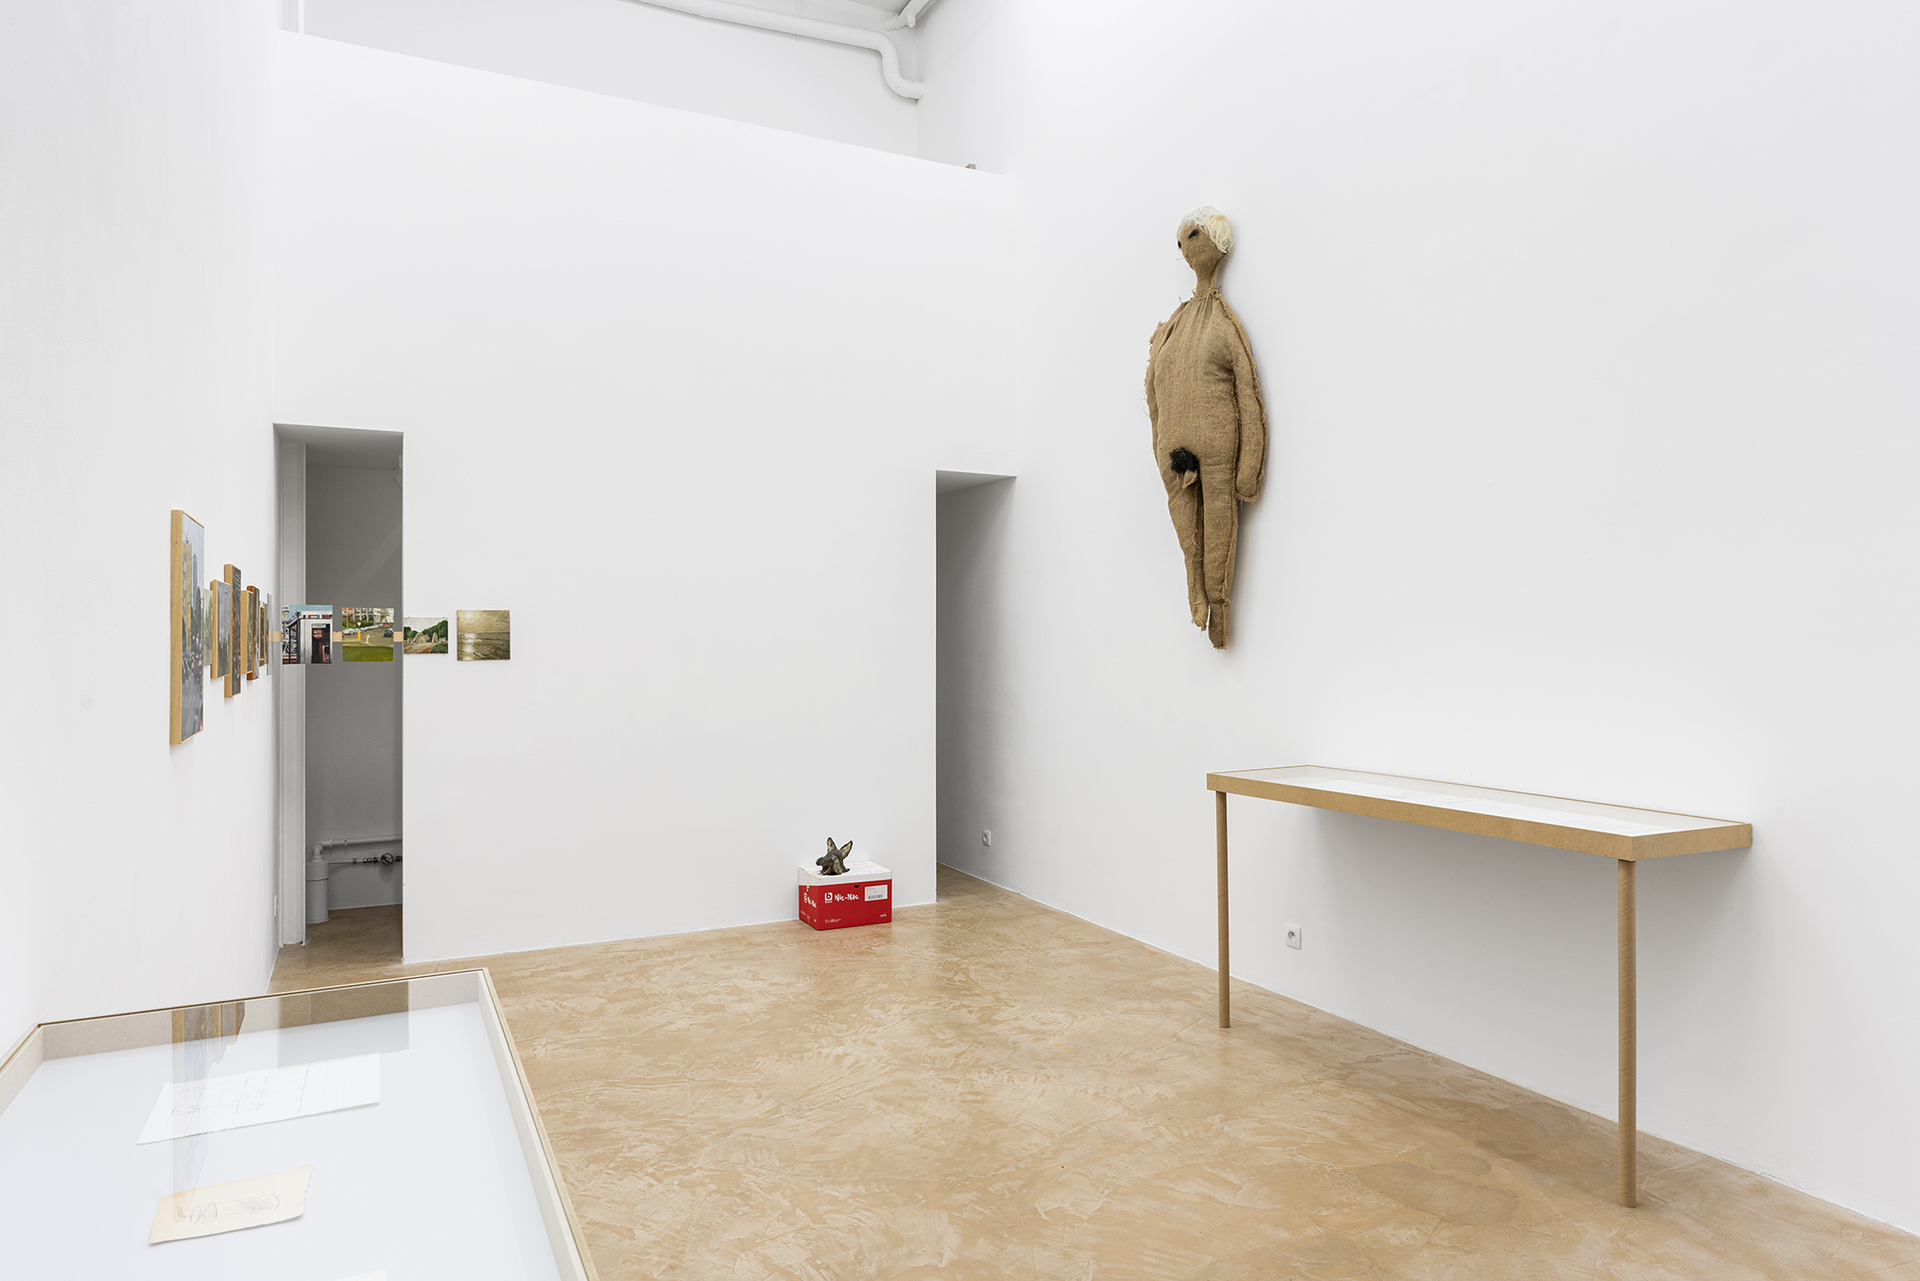 Un Endroit Sûr, installation view, Galerie Duflon Racz Brussels. 2021.